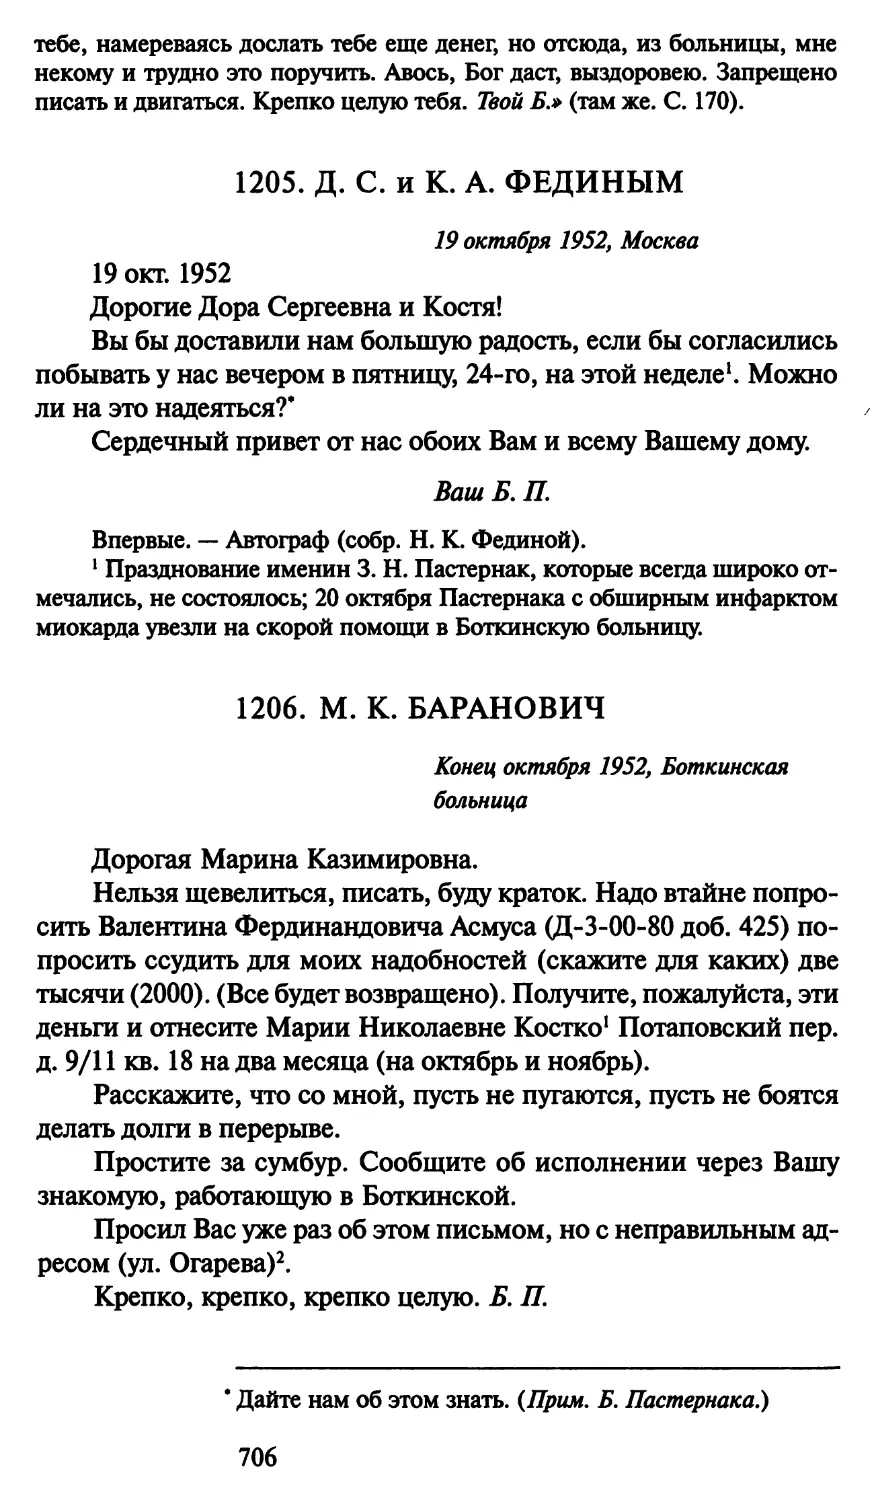 1206. М. К. Баранович конец октября 1952